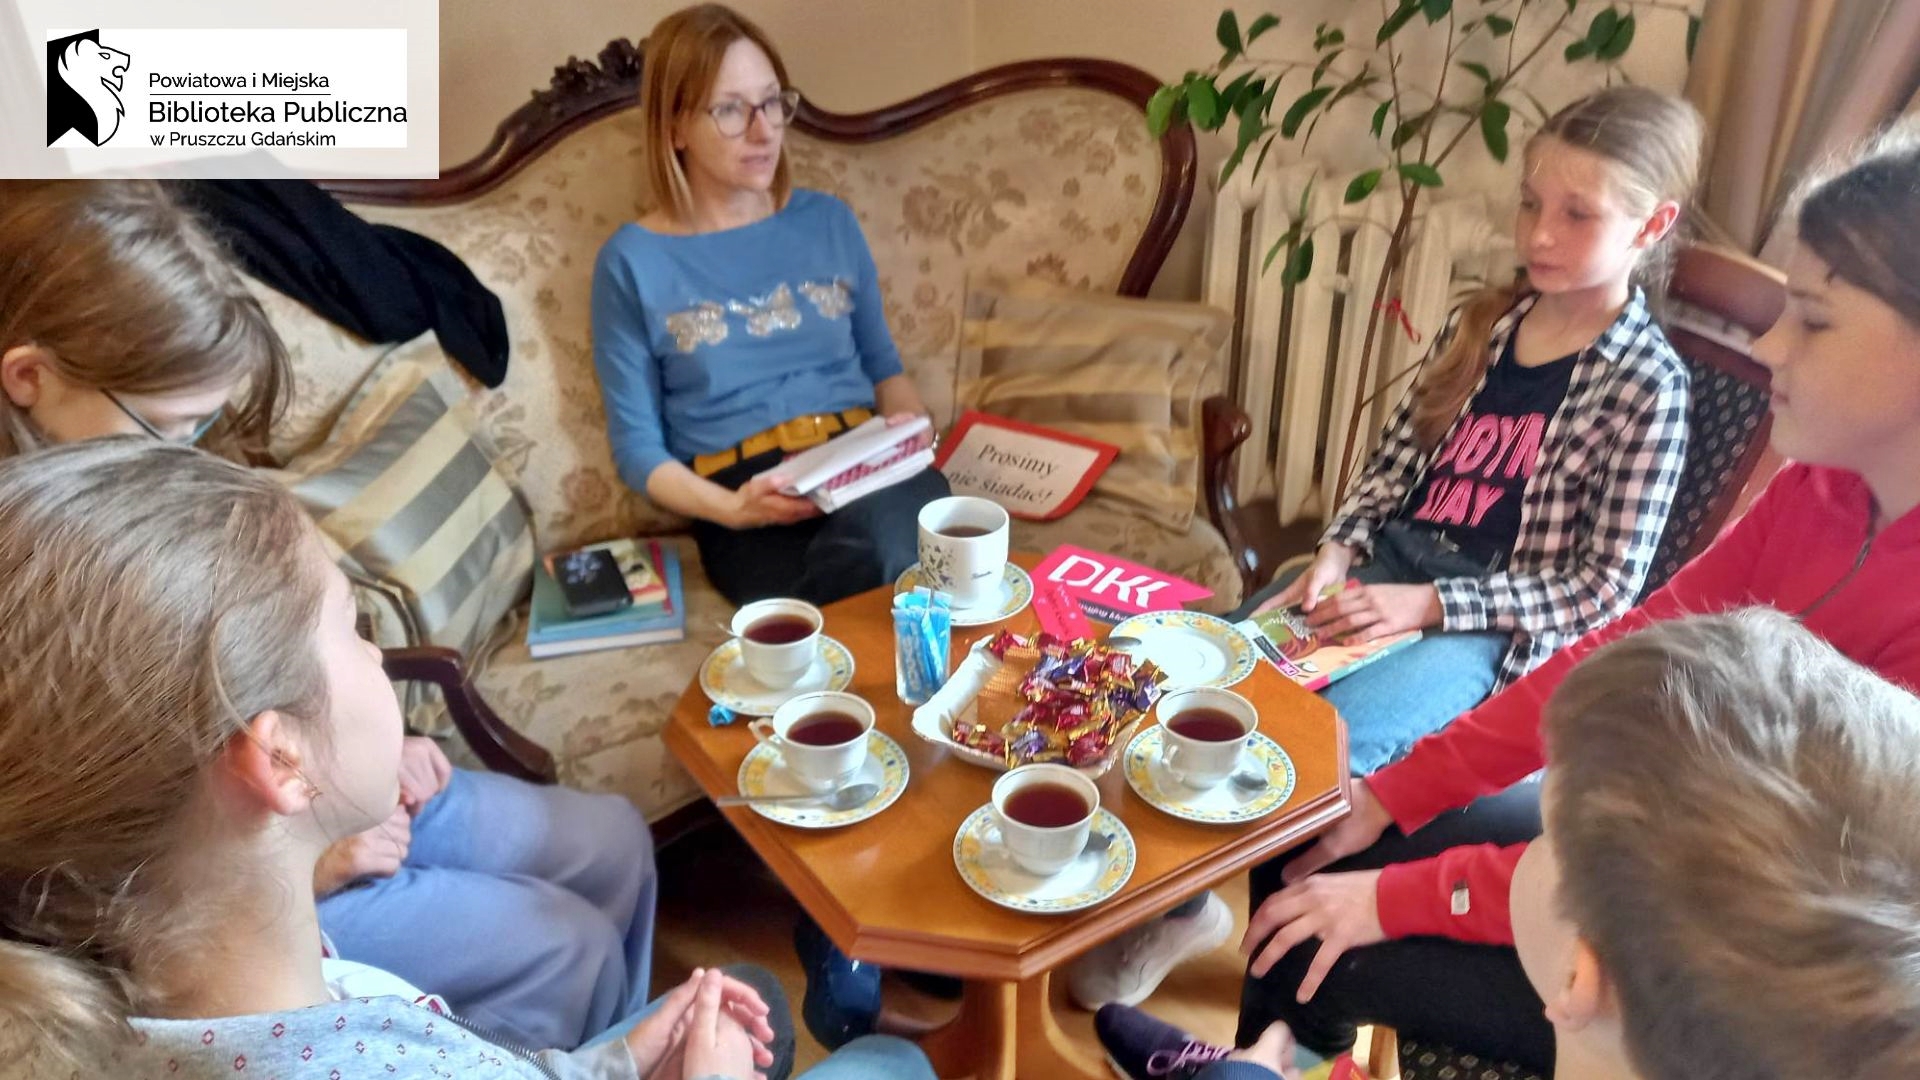 Moderatorka Dyskusyjnego Klubu Książki Joanna Łabasiewicz oraz 5 dzieci siedzą przy stoliku i rozmawiają o książce.